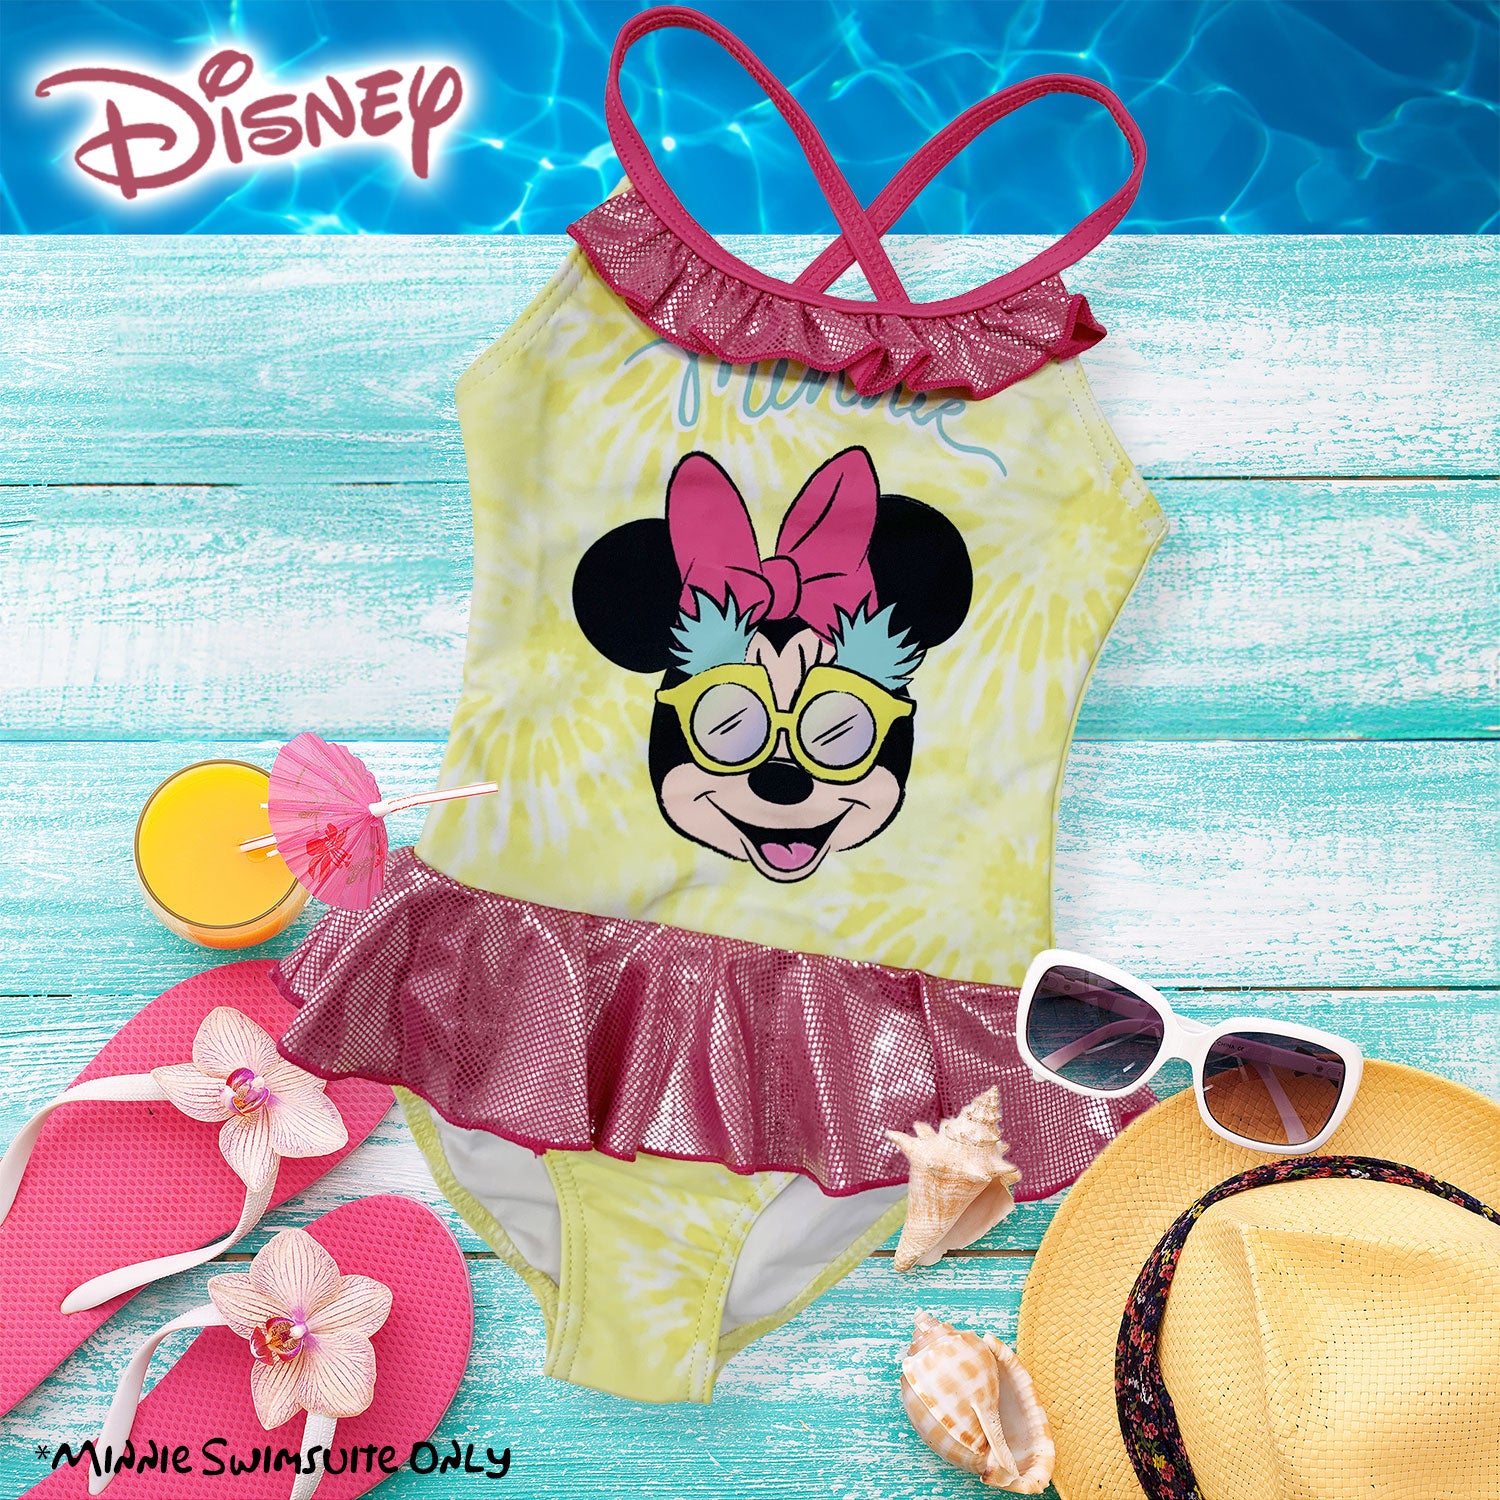 Costume da bagno bambina Disney Minnie Mouse un pezzo costume mare intero 6162